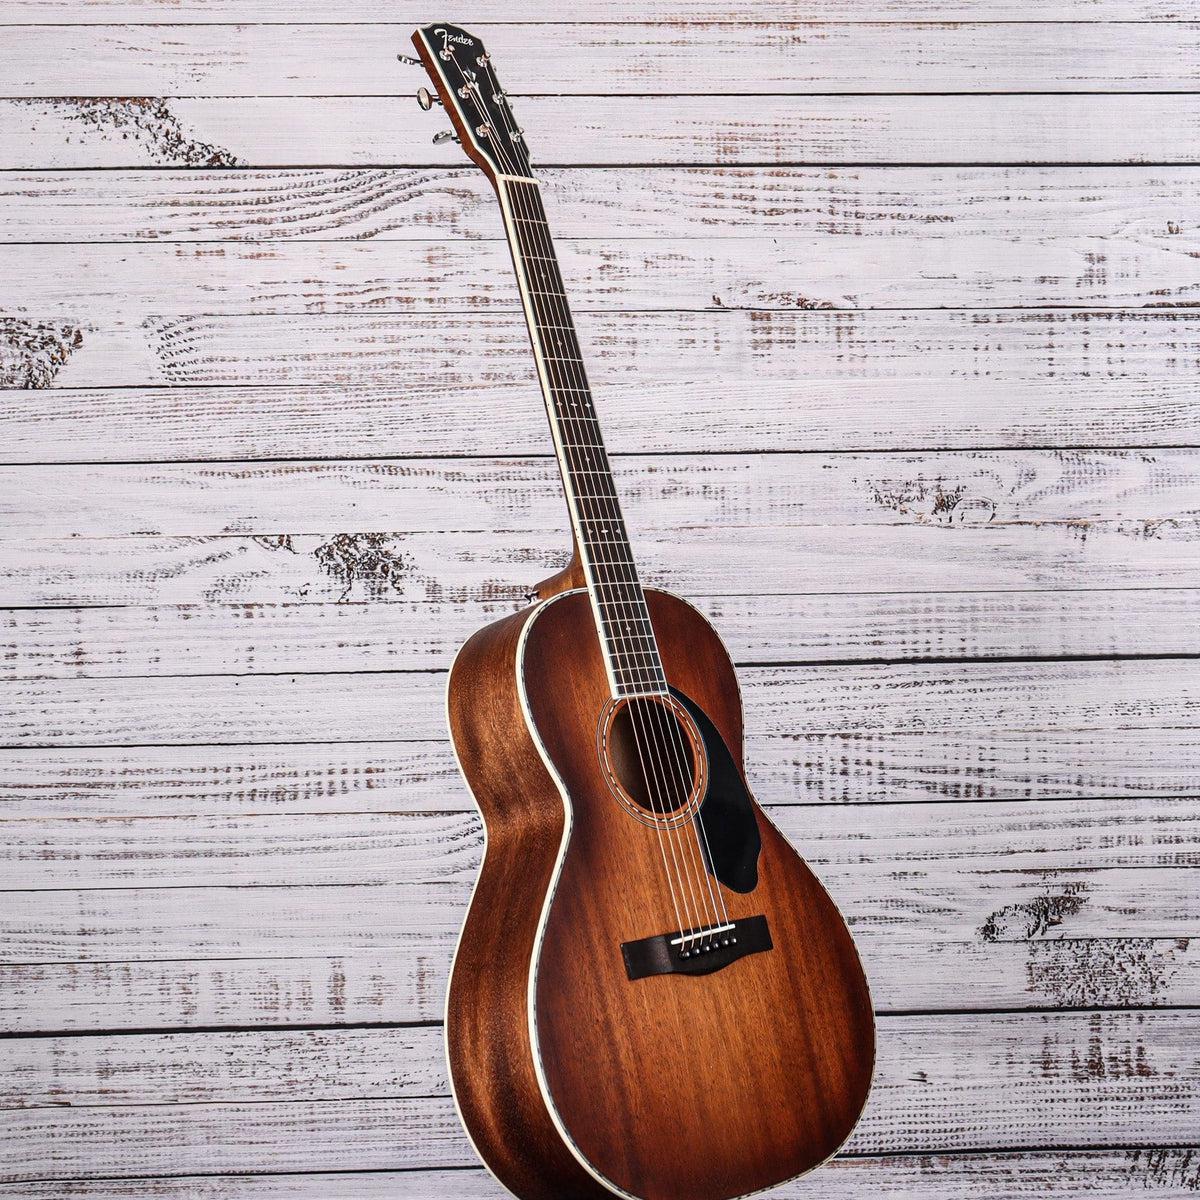 Fender Paramount Acoustic Guitar | Aged Cognac Burst | PS-220E